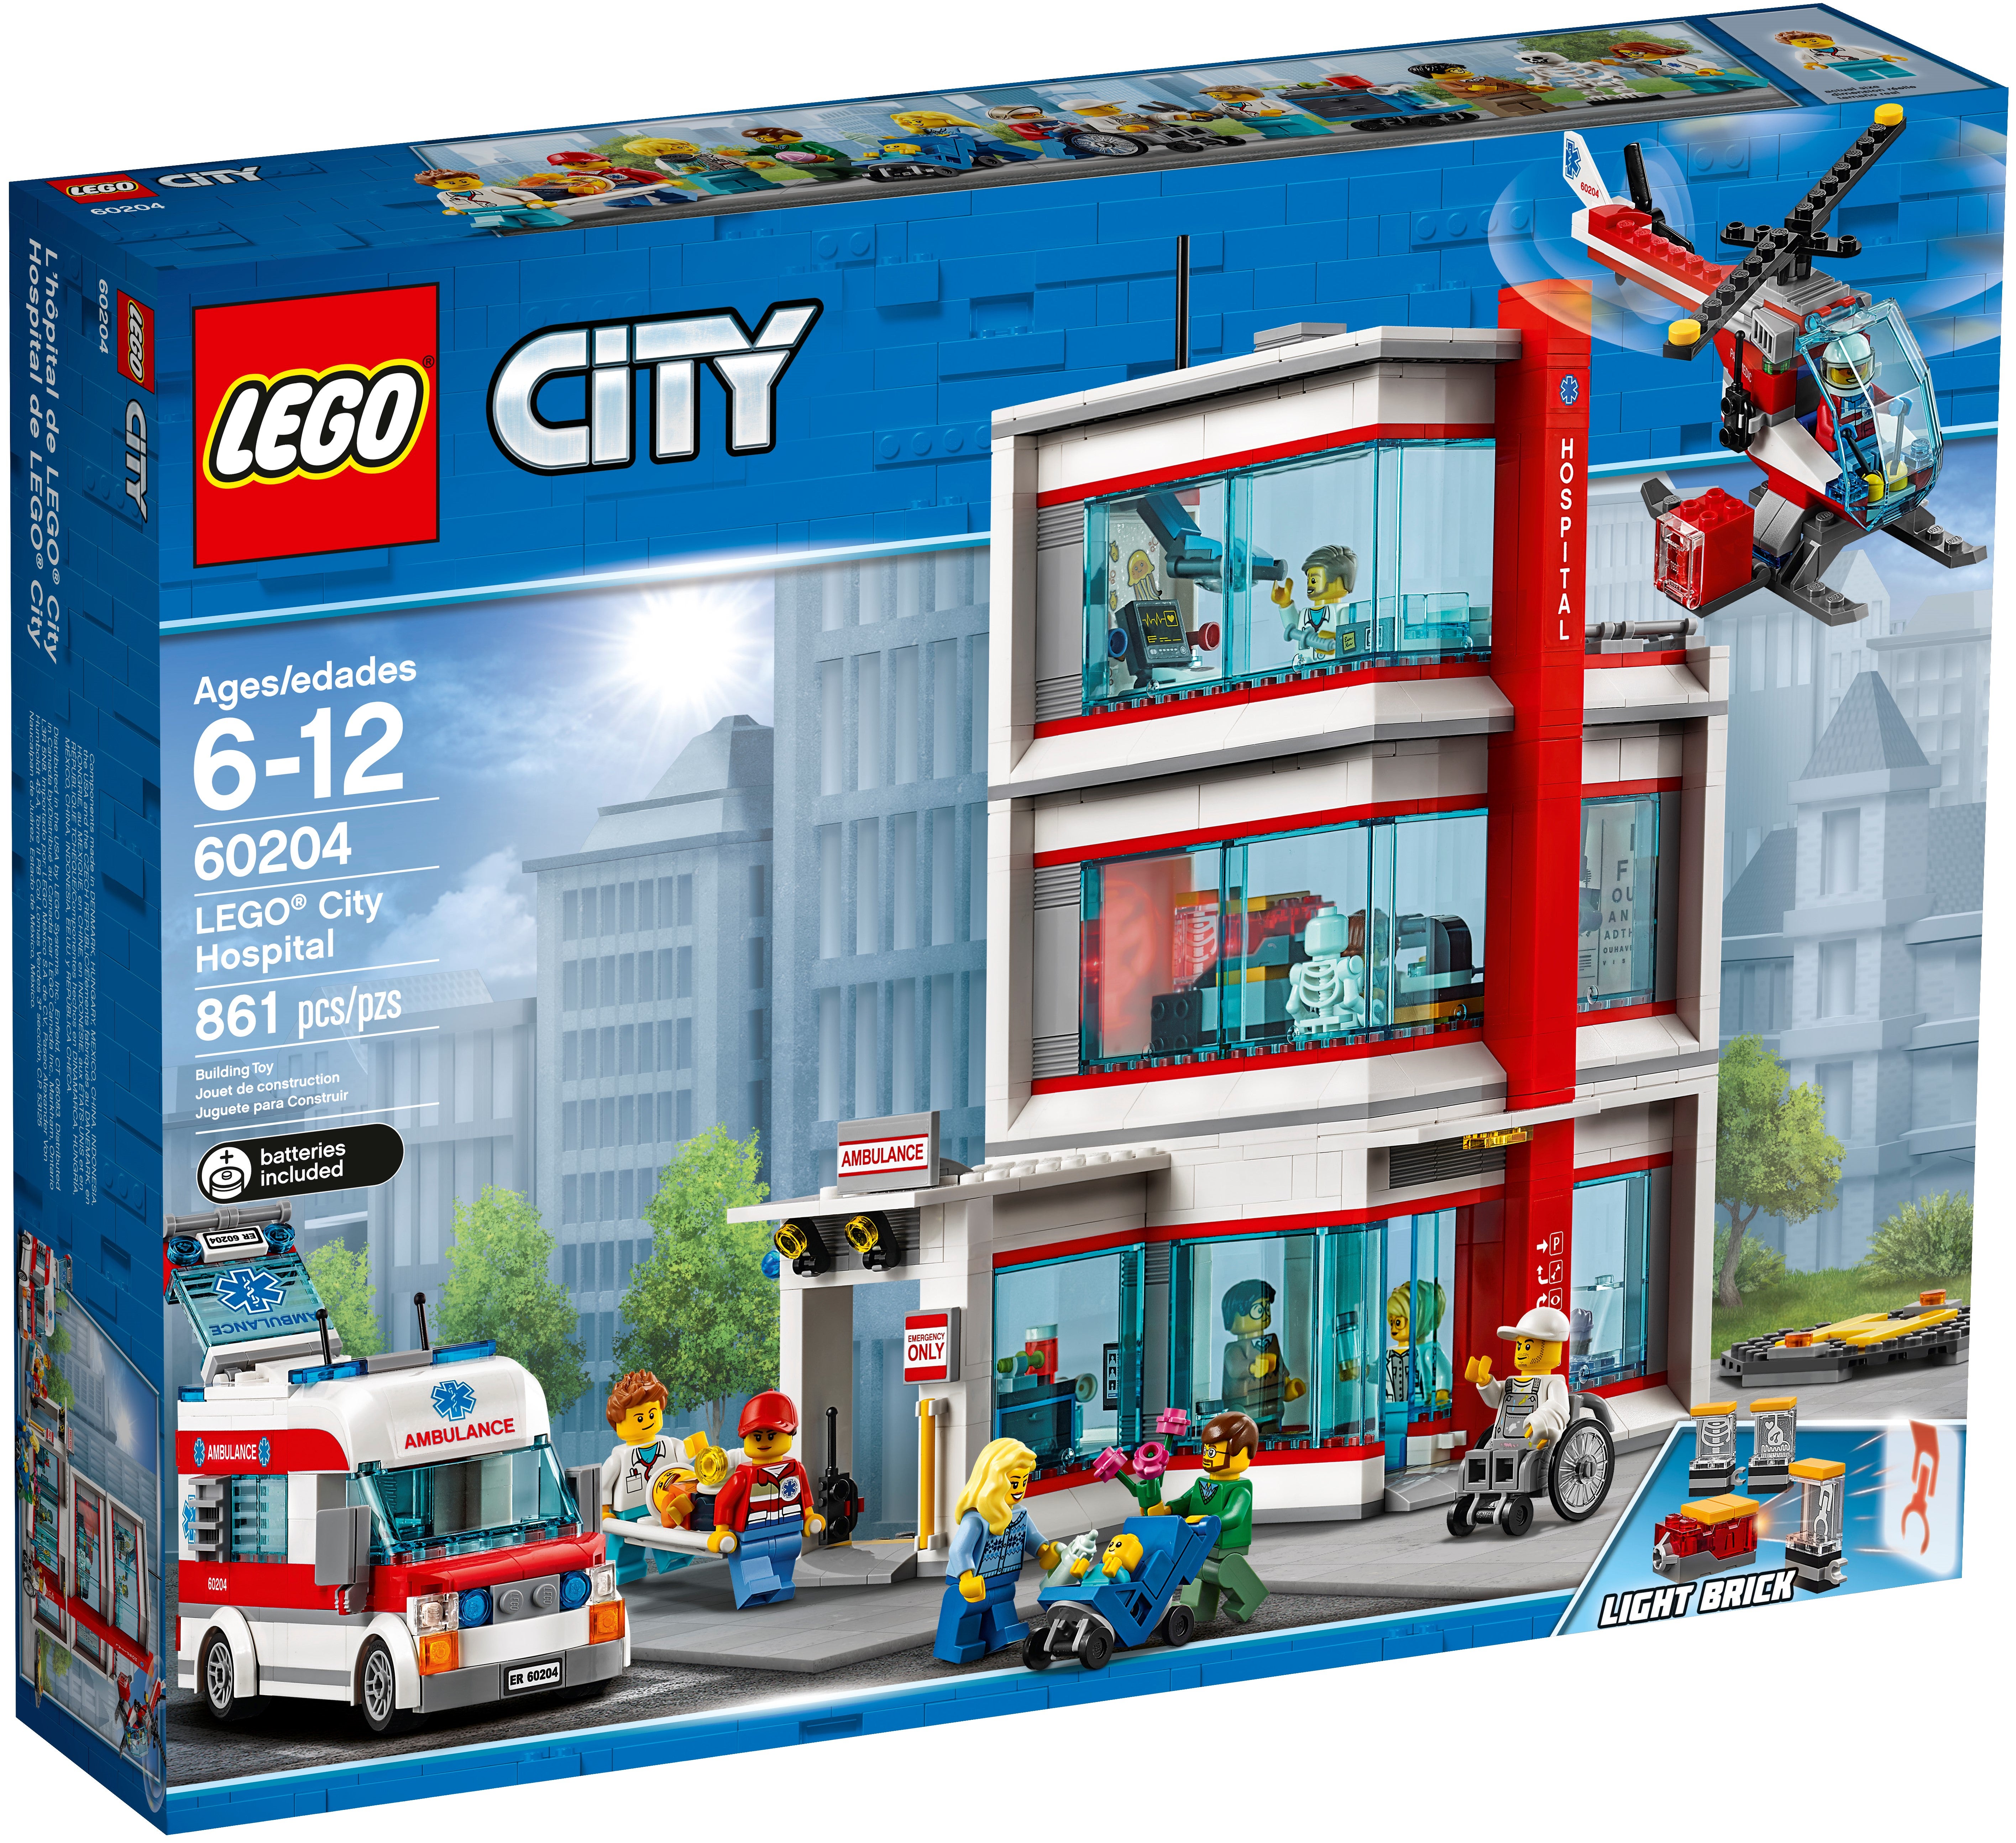 Ambulance Minifigure from set 60204 City Hospital NEW Lego Female Paramedic